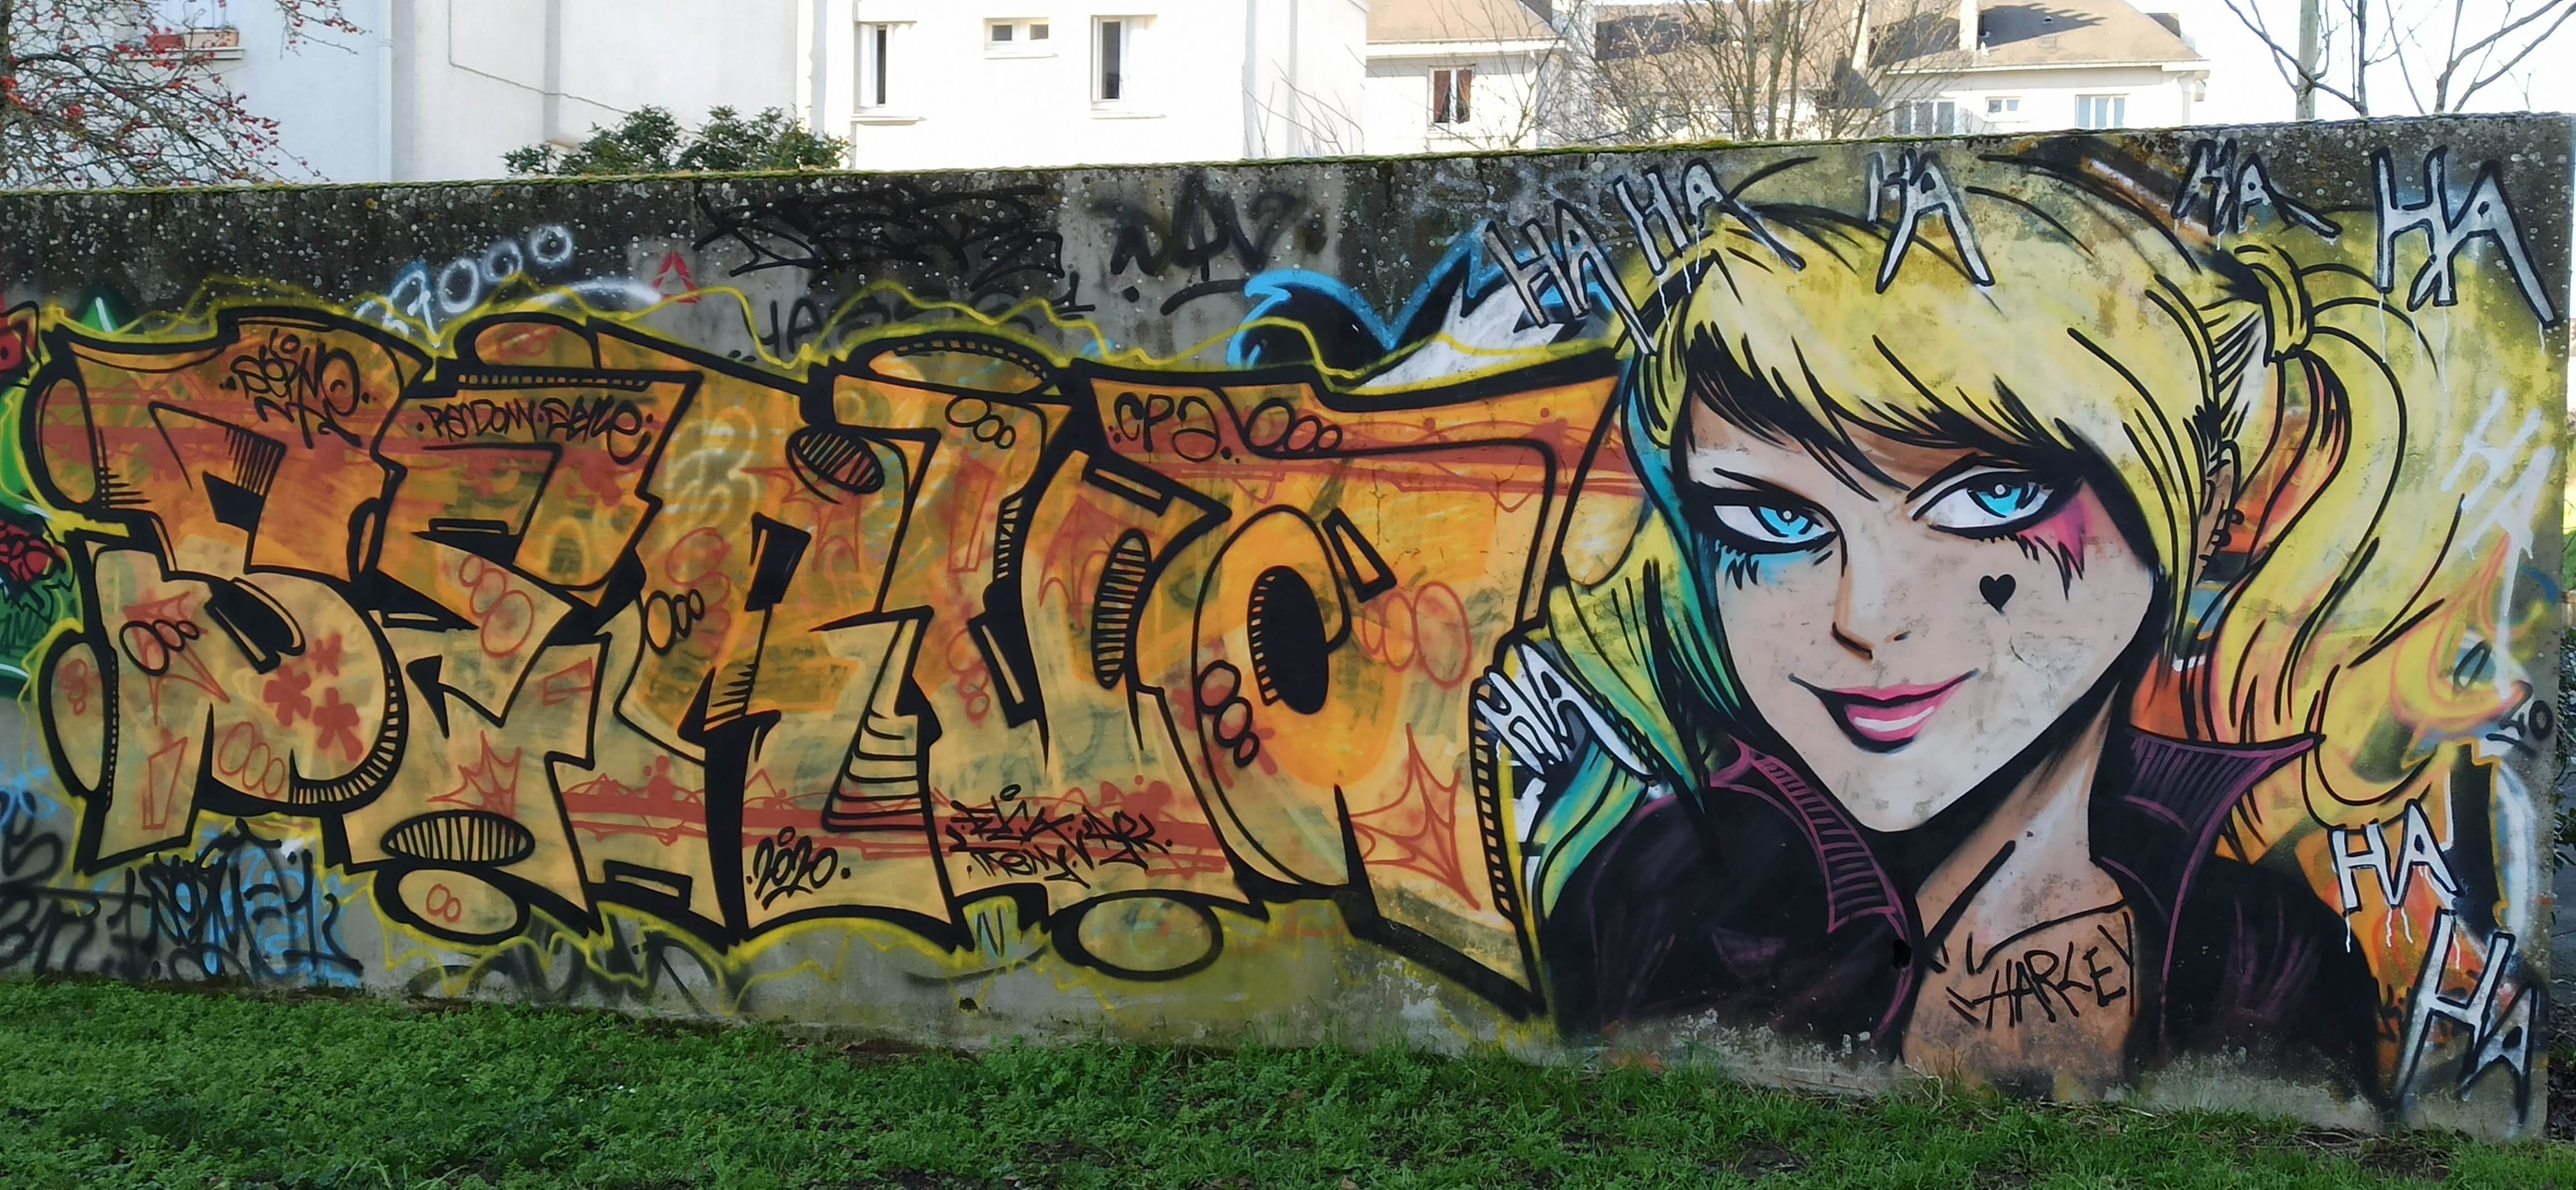 Graffiti 4703 Harley Queen capturé par Rabot à Nantes France